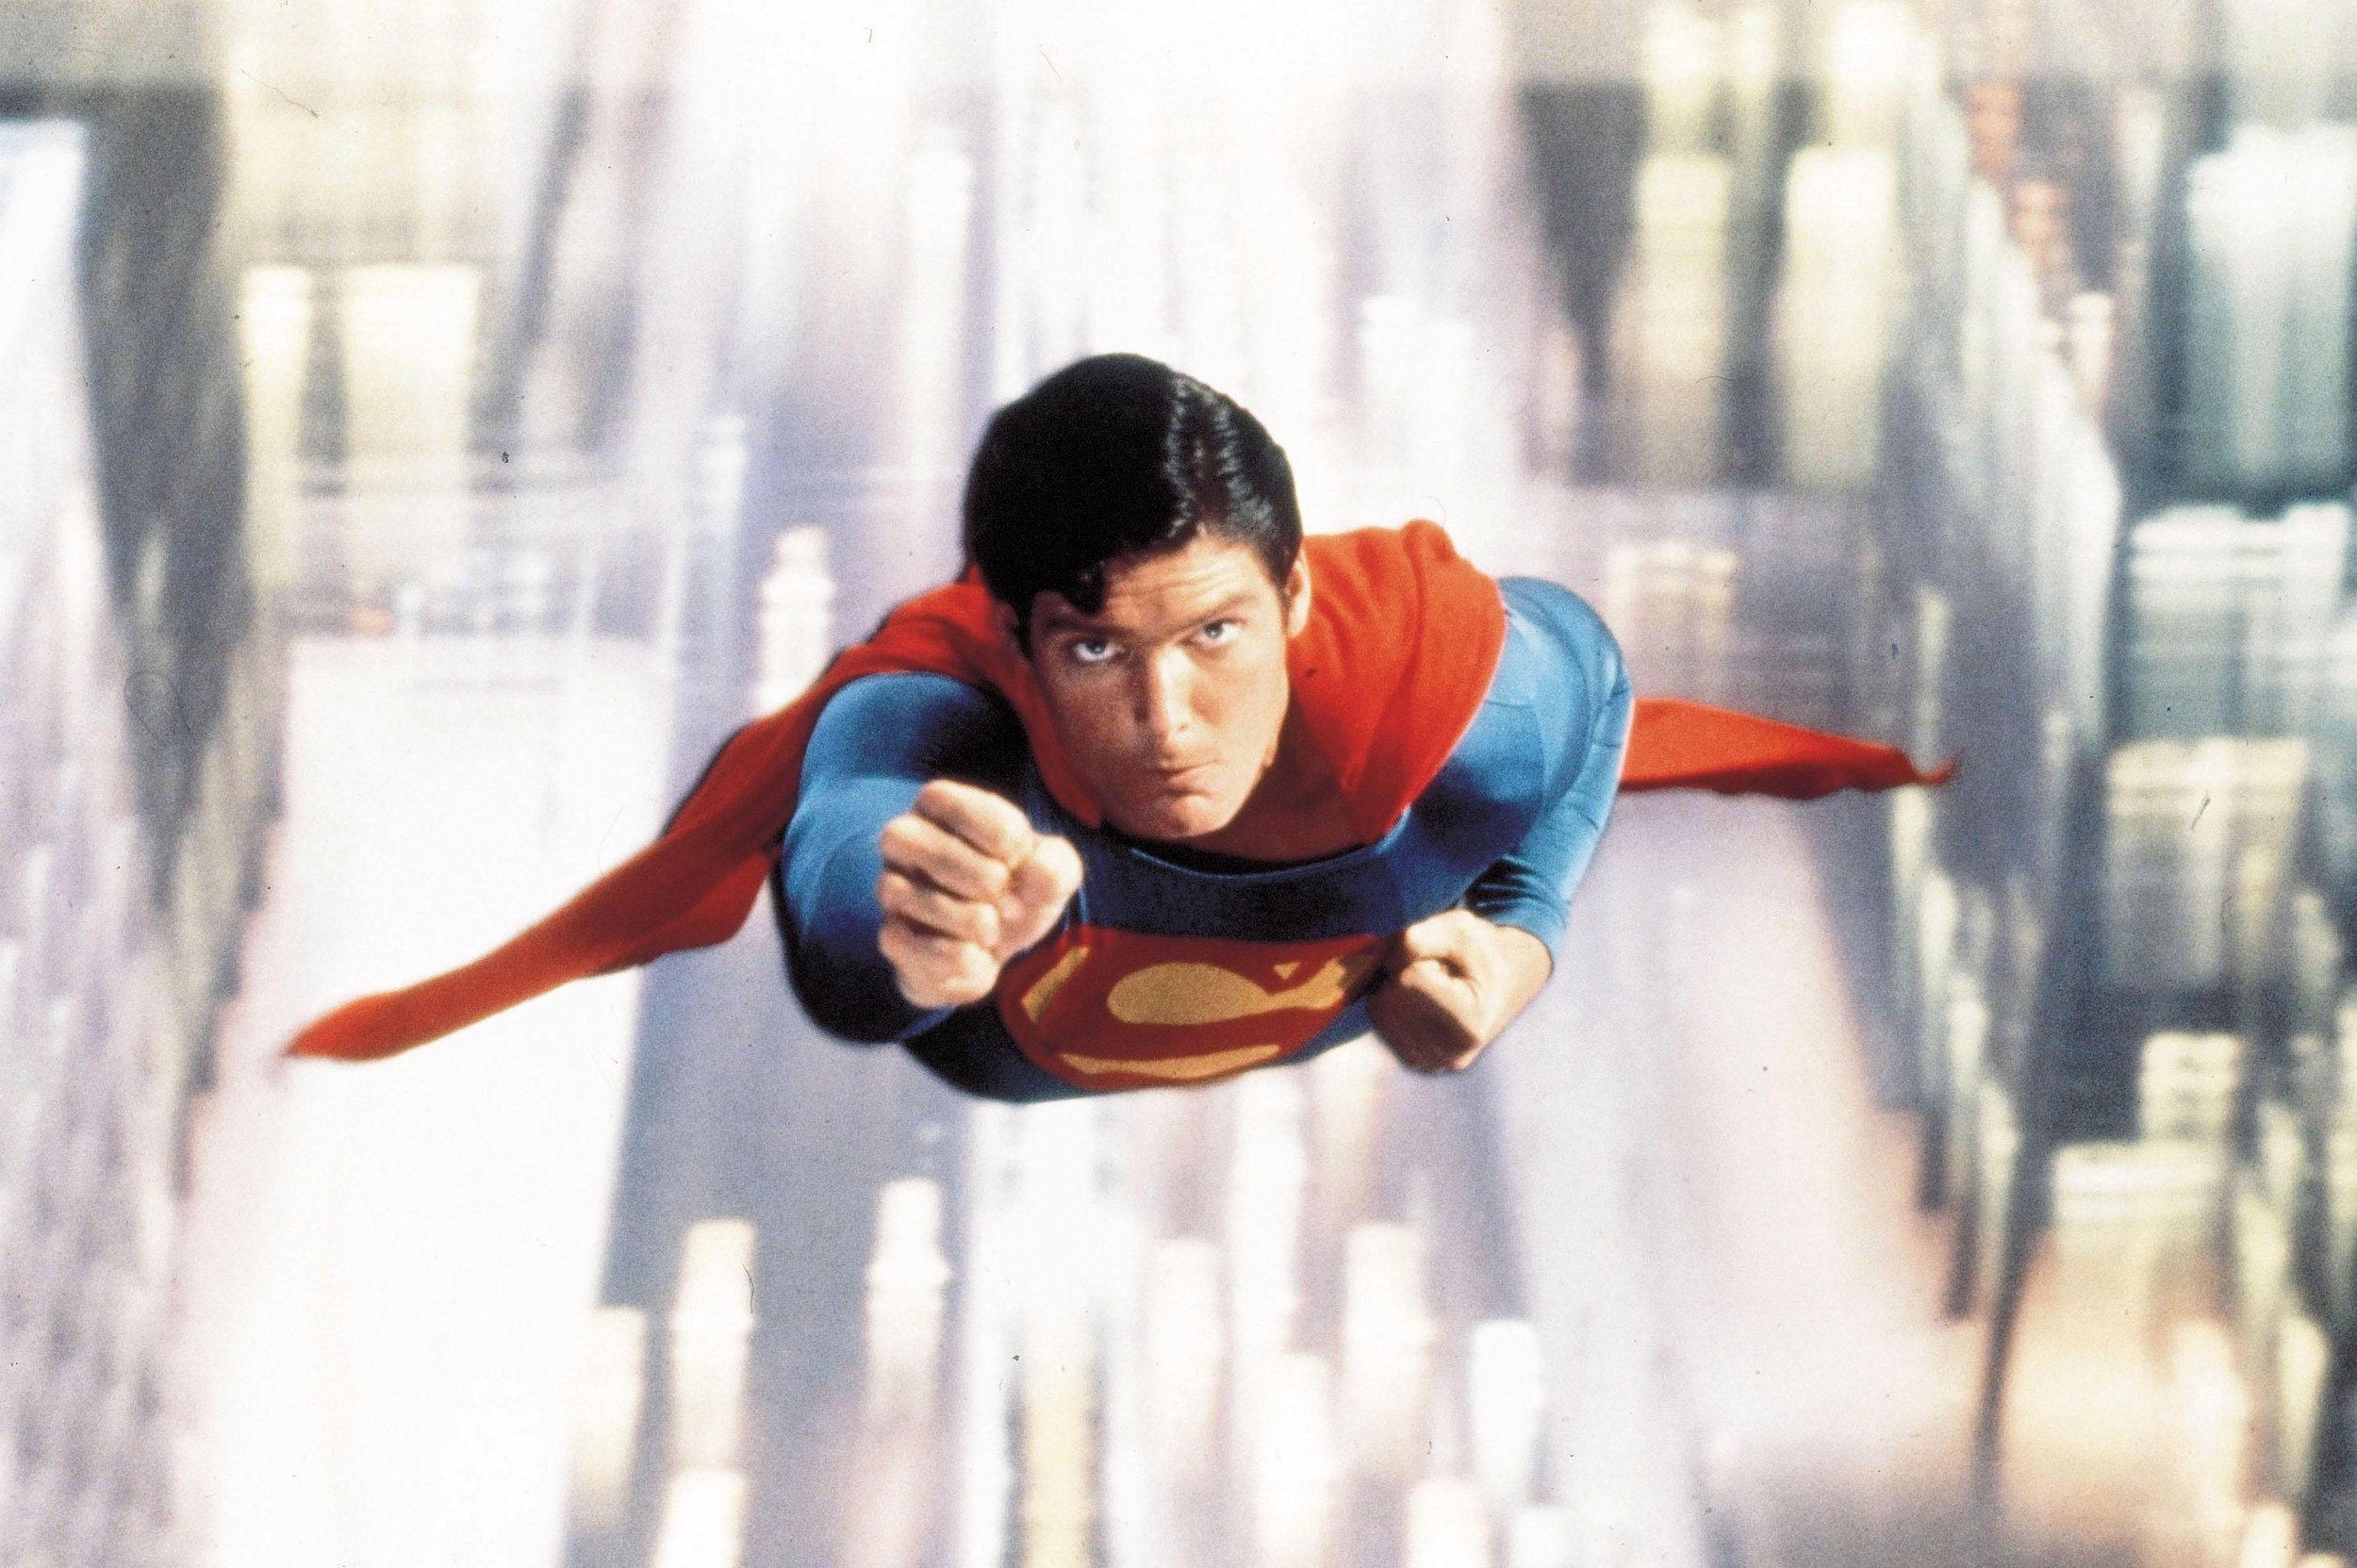 Enquete da Semana: Christopher Reeve é eleito o melhor Superman